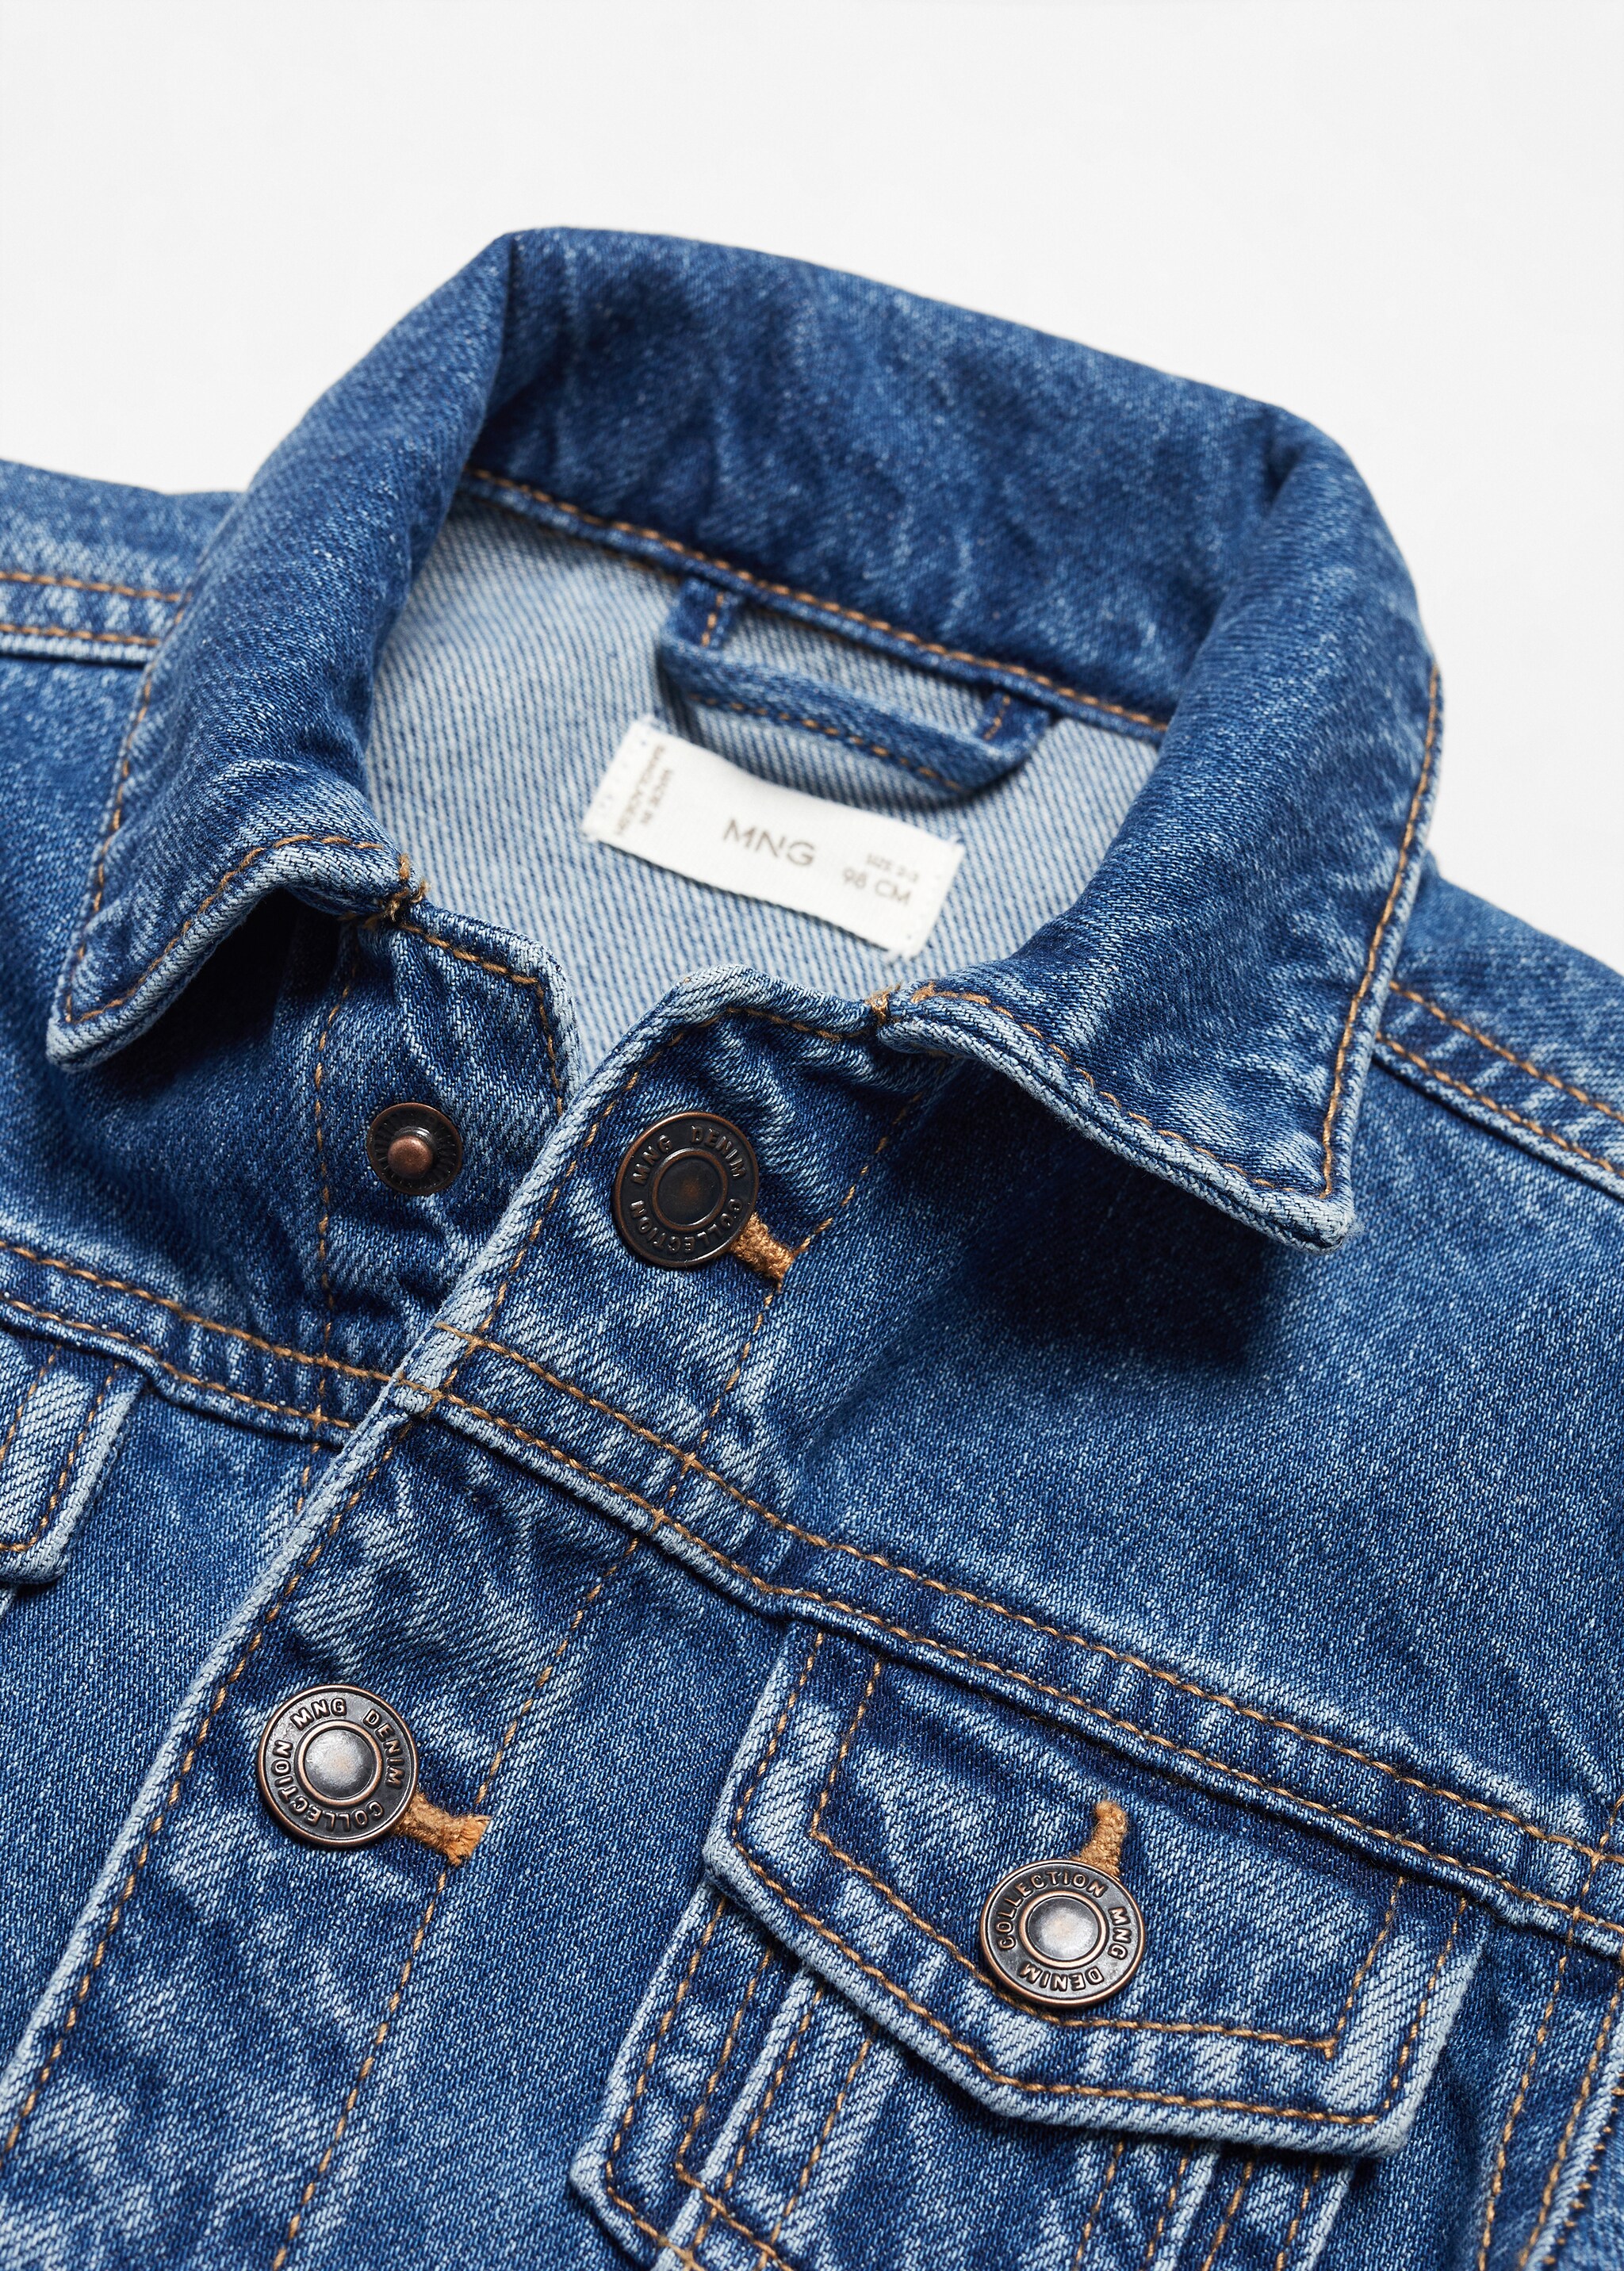 Jeansjacke aus Baumwolle - Detail des Artikels 0